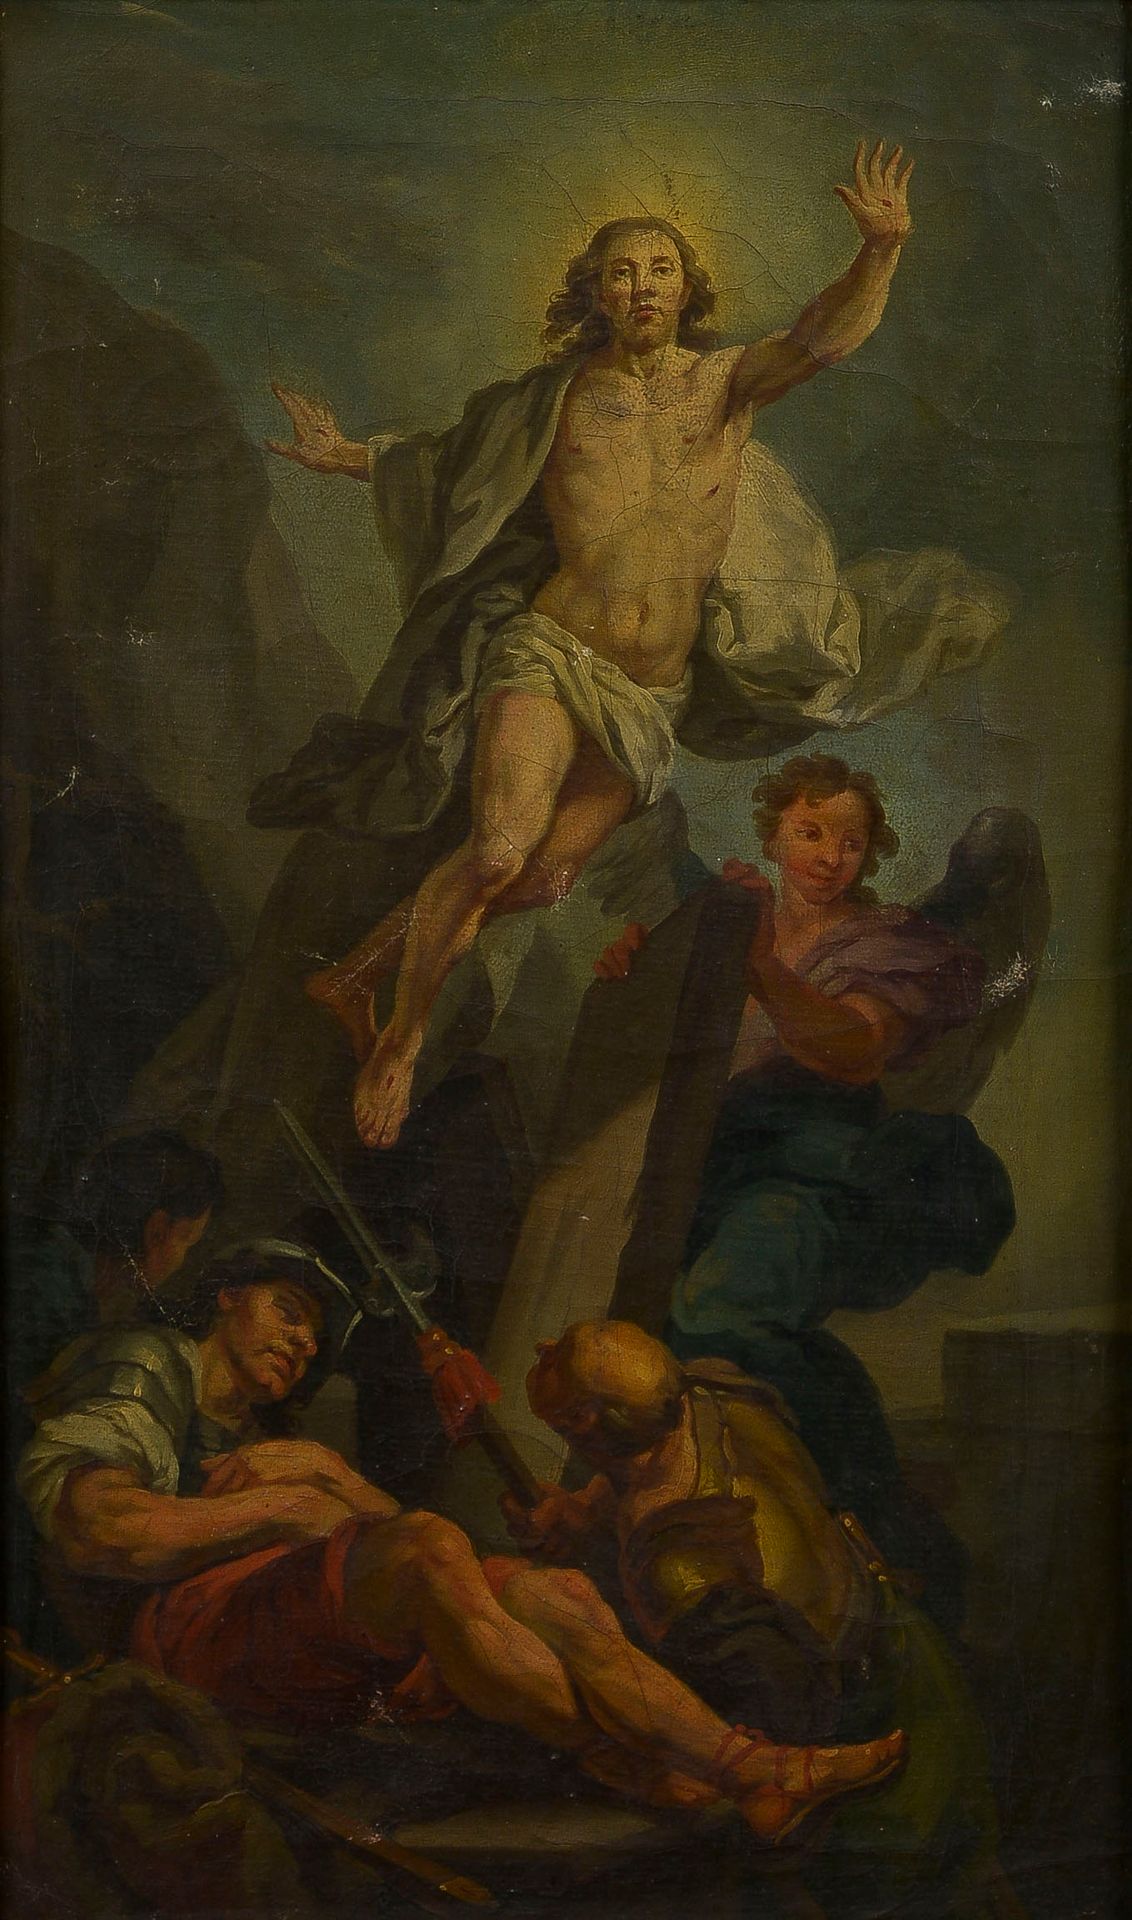 Null 安托万-雷诺(1731-1806)，根据卡勒-凡-卢绘制

基督的复活

布面油画

62 x 38,5 cm

底部有一个标签："安托万-雷努，生于&hellip;